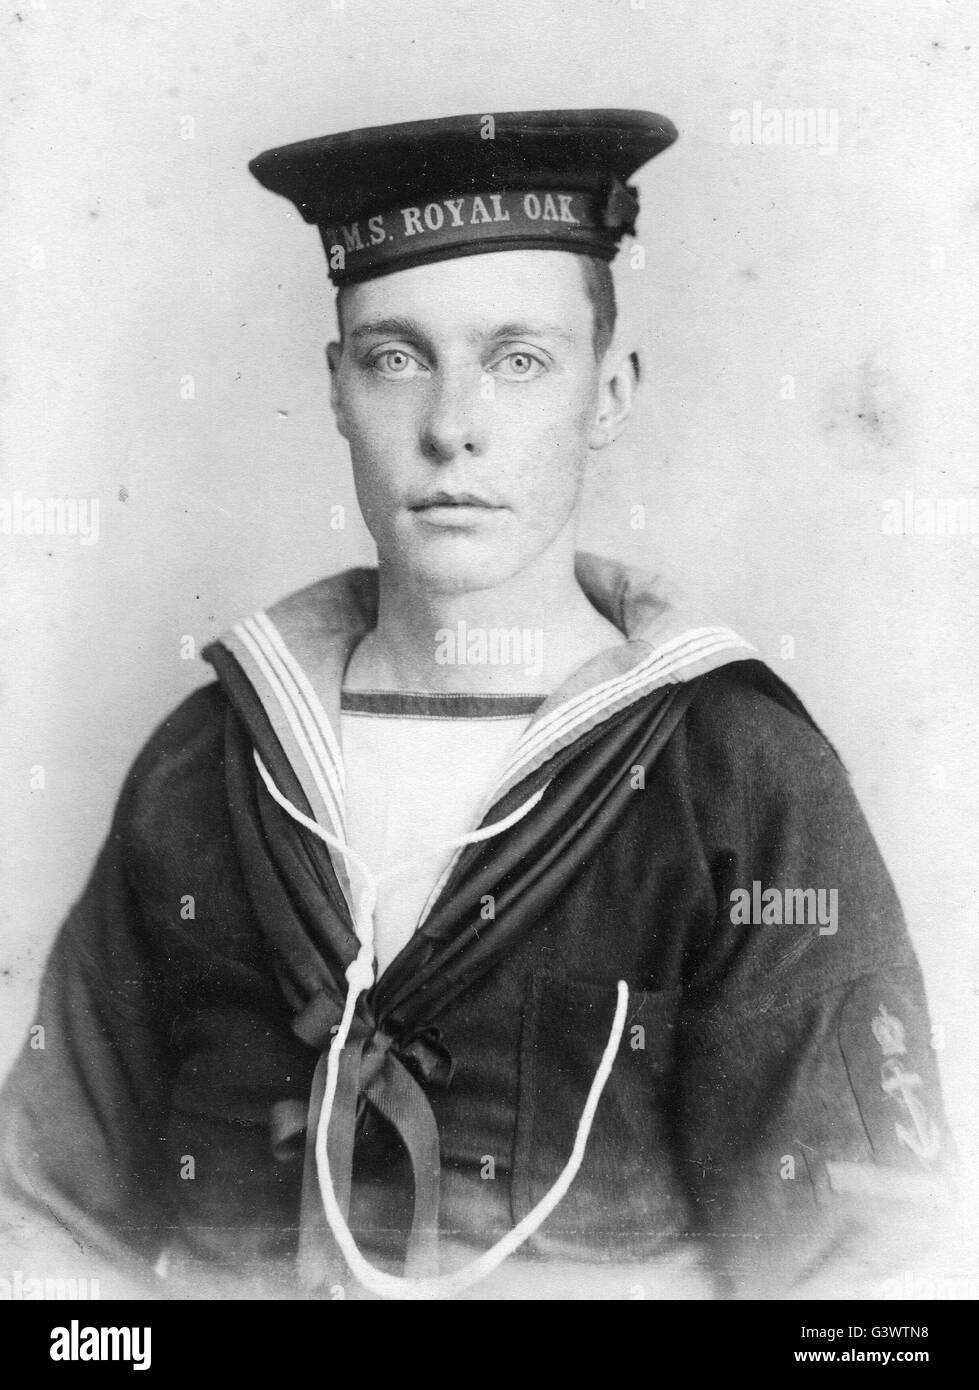 Königliche Marine Seemann aus HMS Royal Oak ww1. Petty Officer zweiter Klasse. Stockfoto